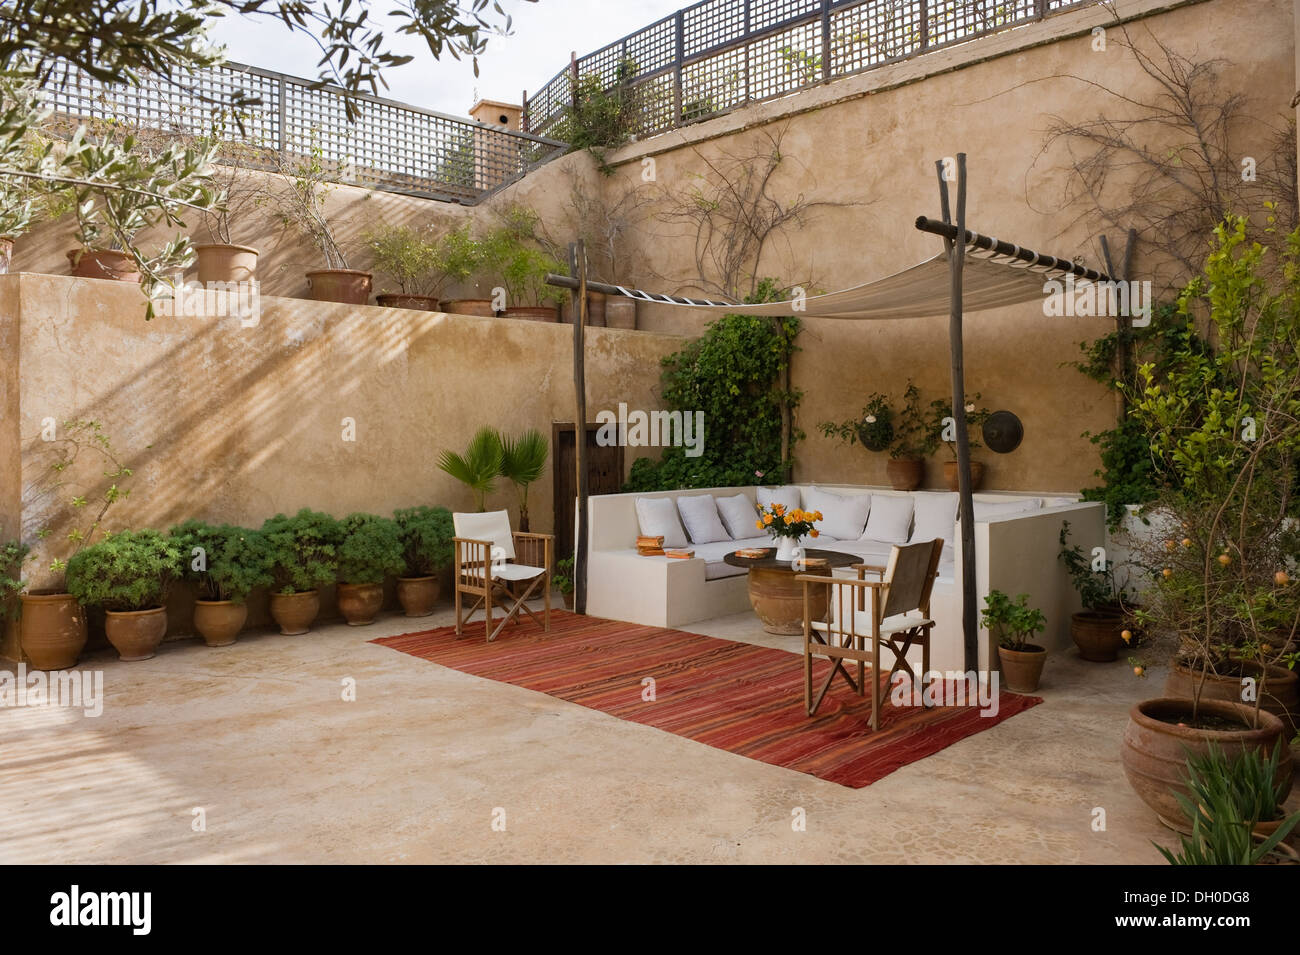 Marokkanischen Innenhof-Garten mit überdachter Sitzecke Stockfoto